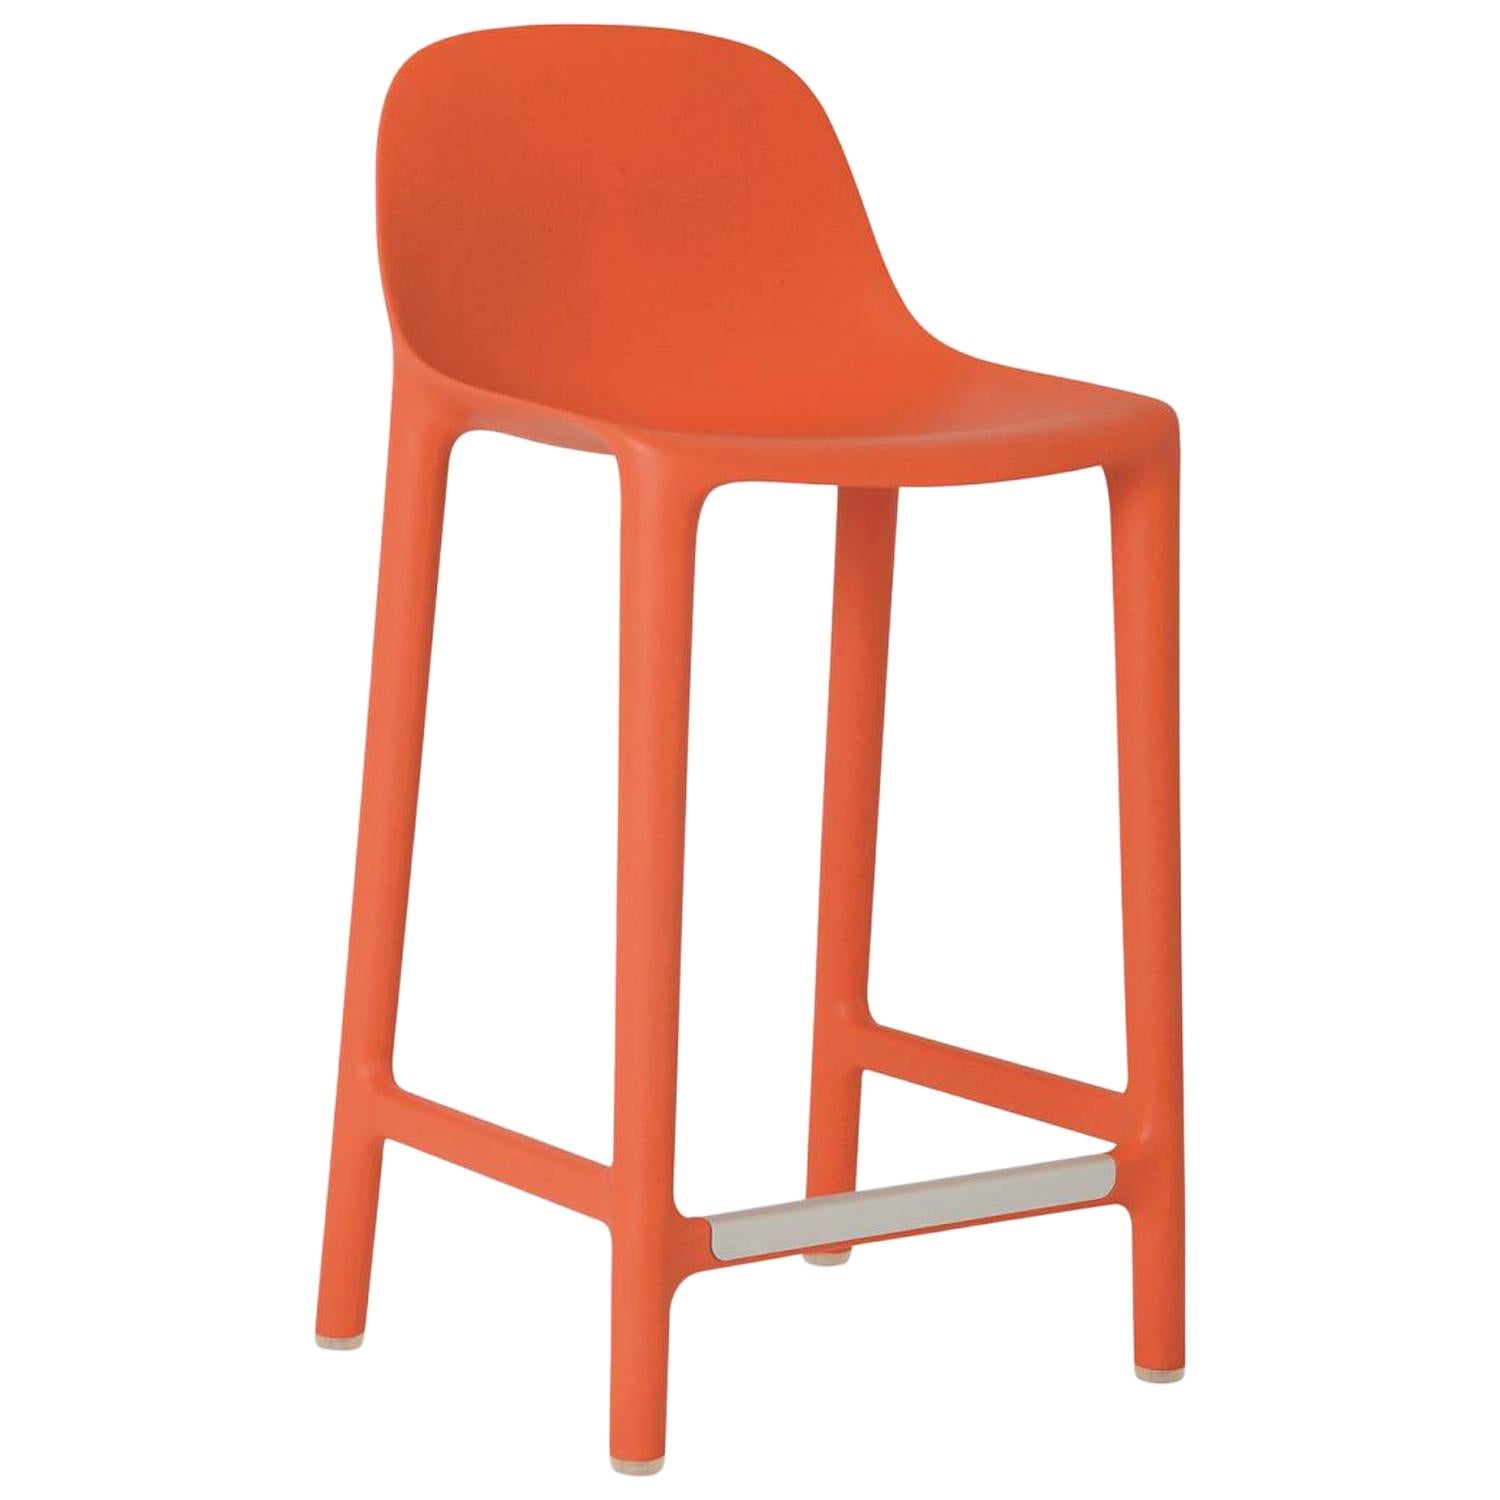 Tabouret de comptoir Broom d'Emeco en orange de Philippe Starck